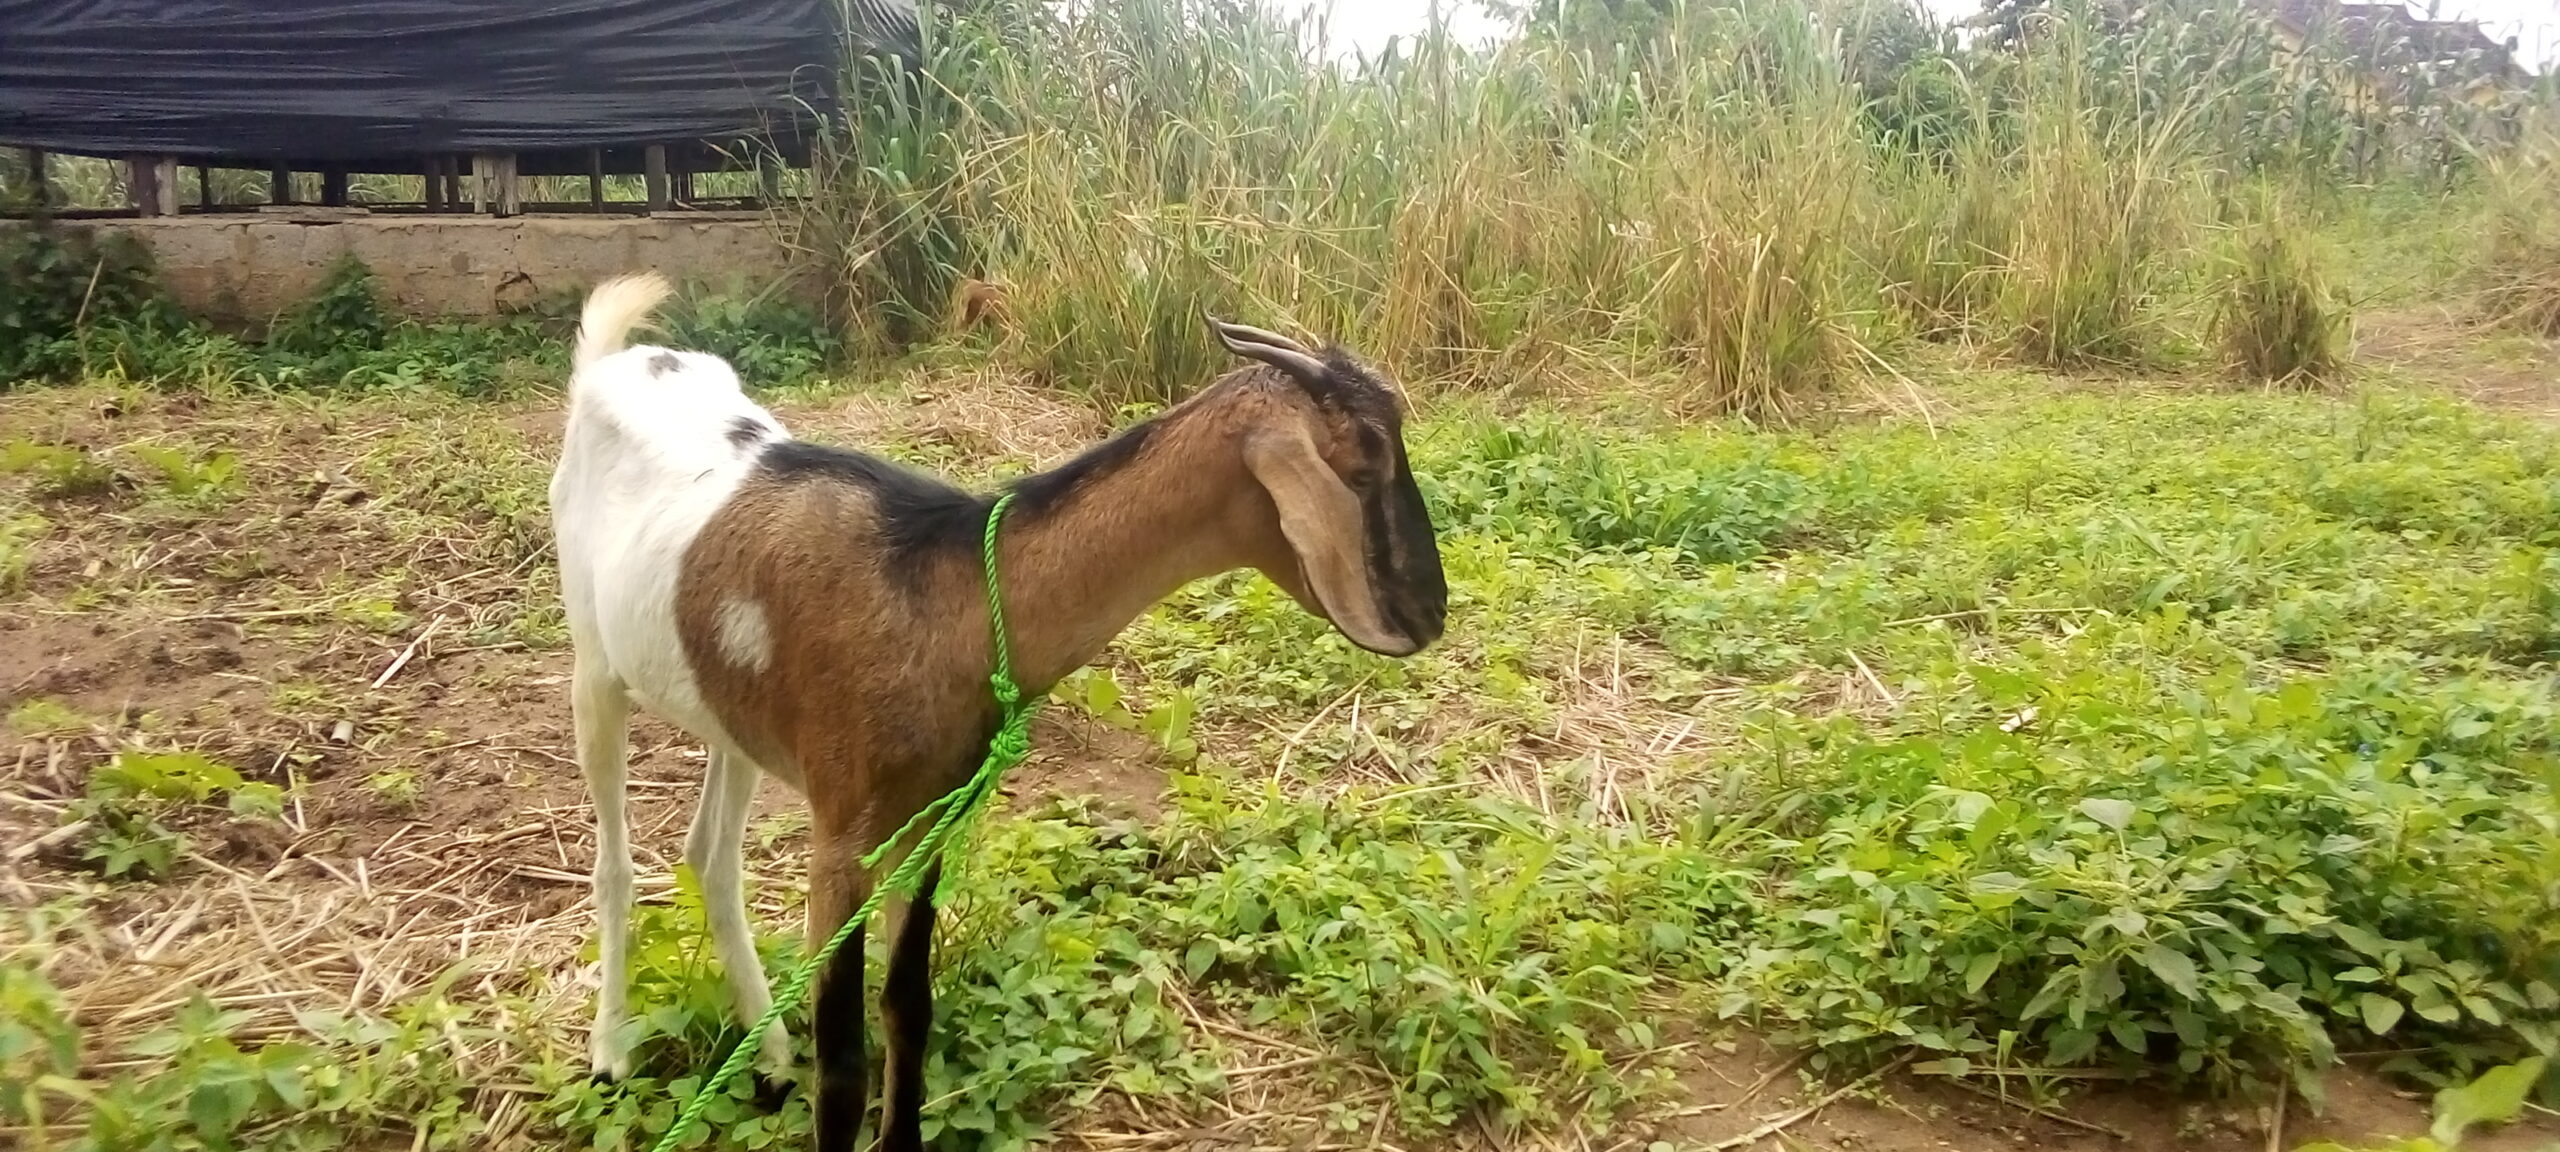 Sokoto Maradi Goat for sale in Nigeria